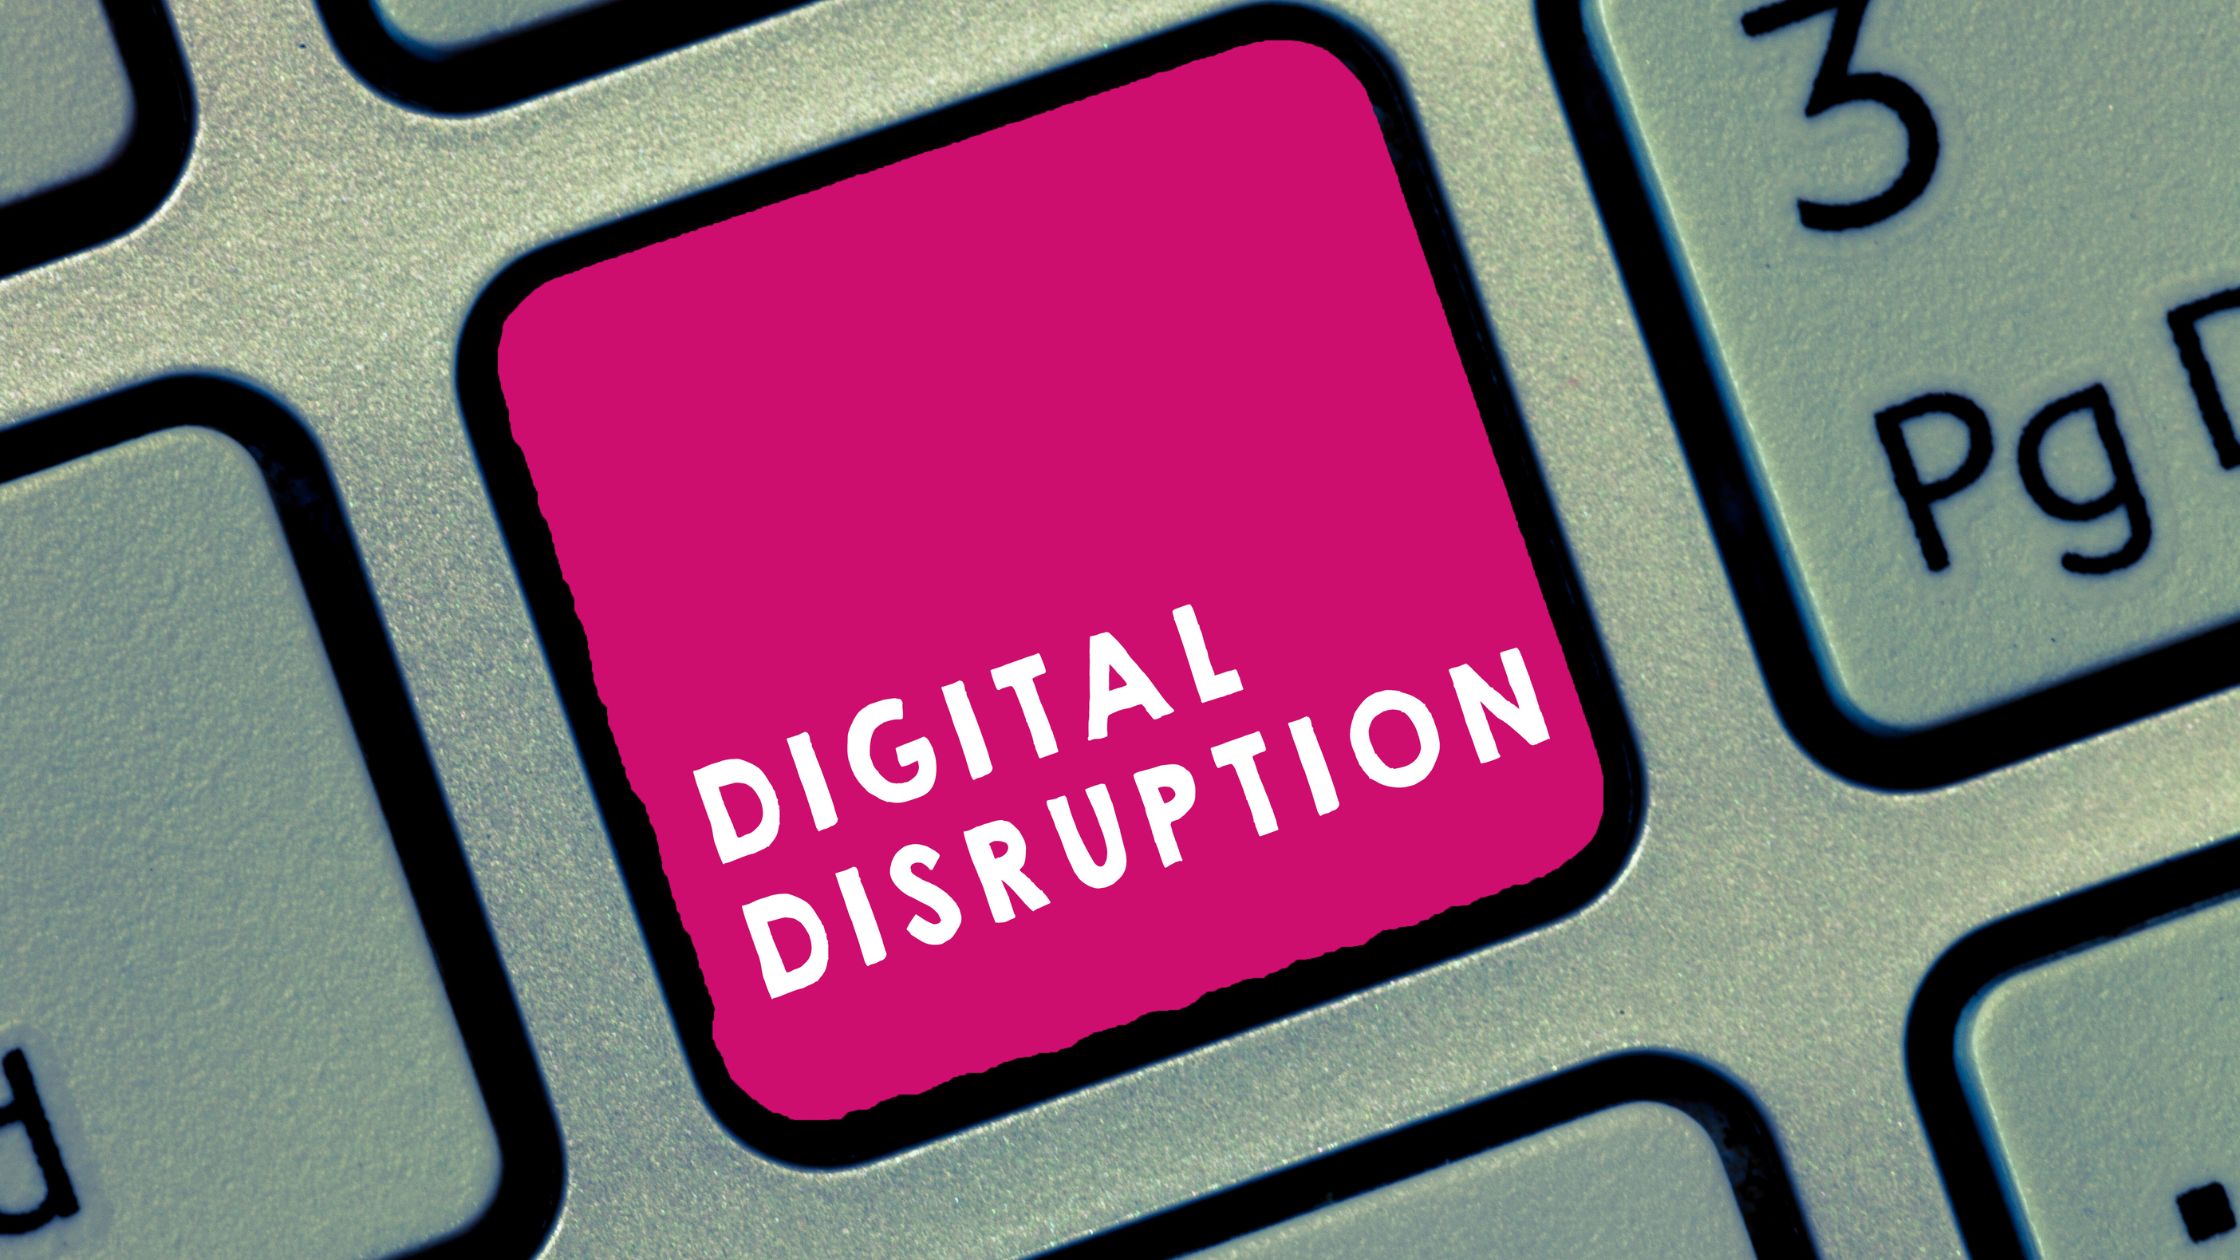 Digitale Disruption erklärt - Definition, Merkmale und Beispiele